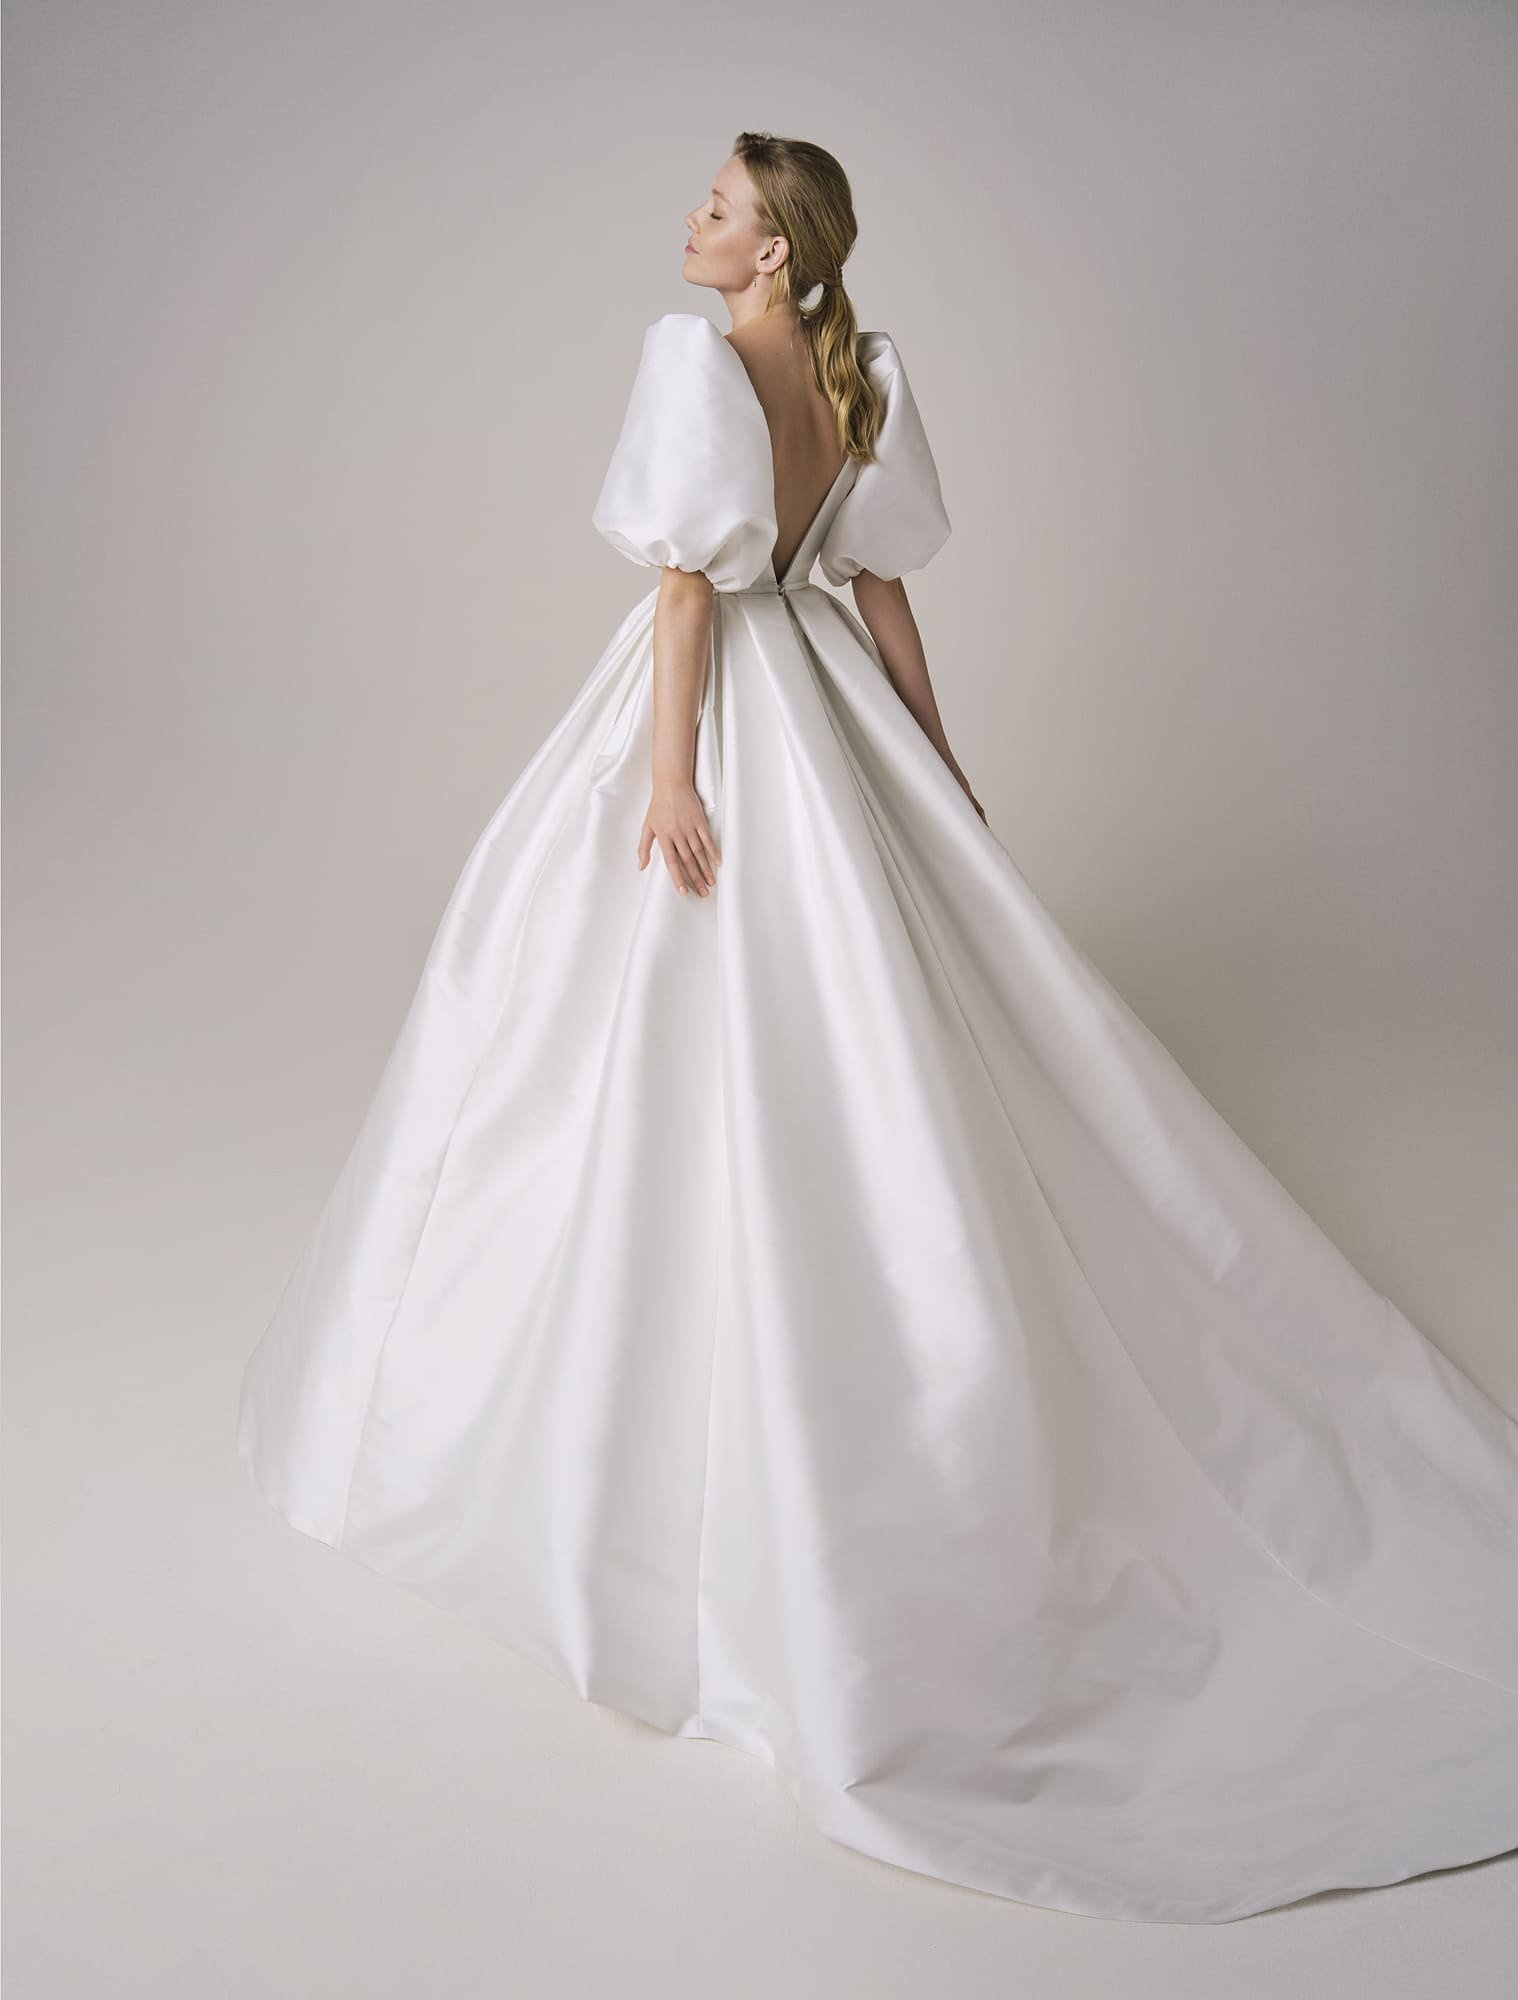 Jesus-Peiro-Wedding-Dress-246-3 (1).jpg